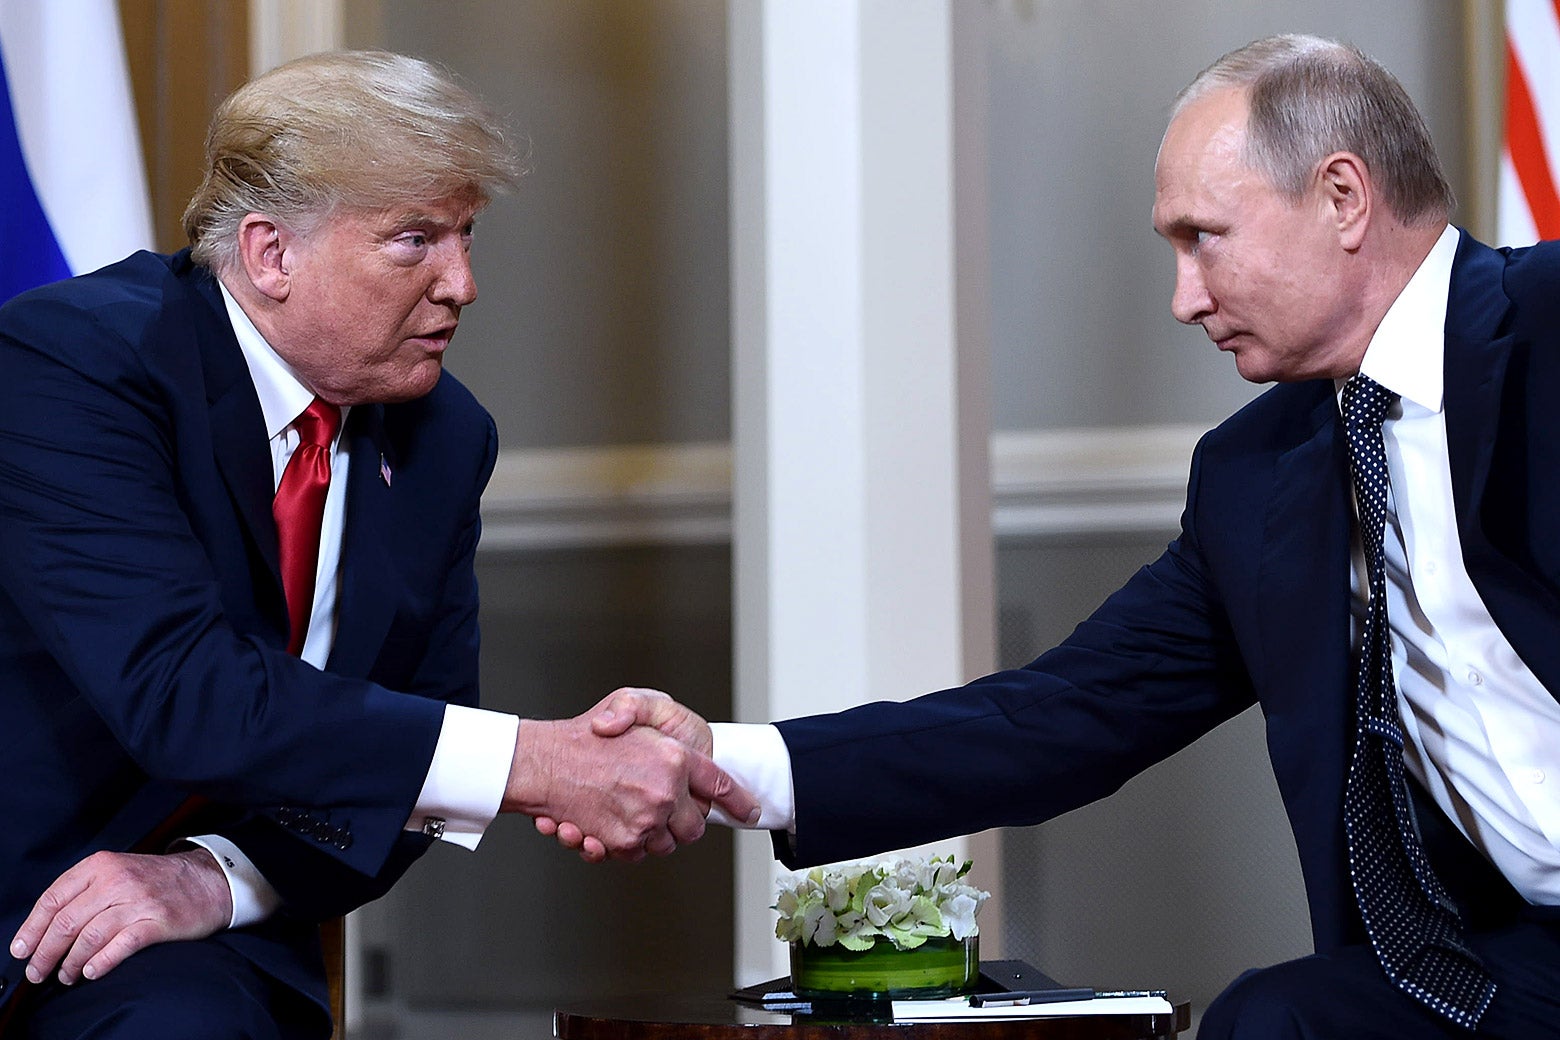 Donald Trump and Vladimir Putin, seated, shake hands.